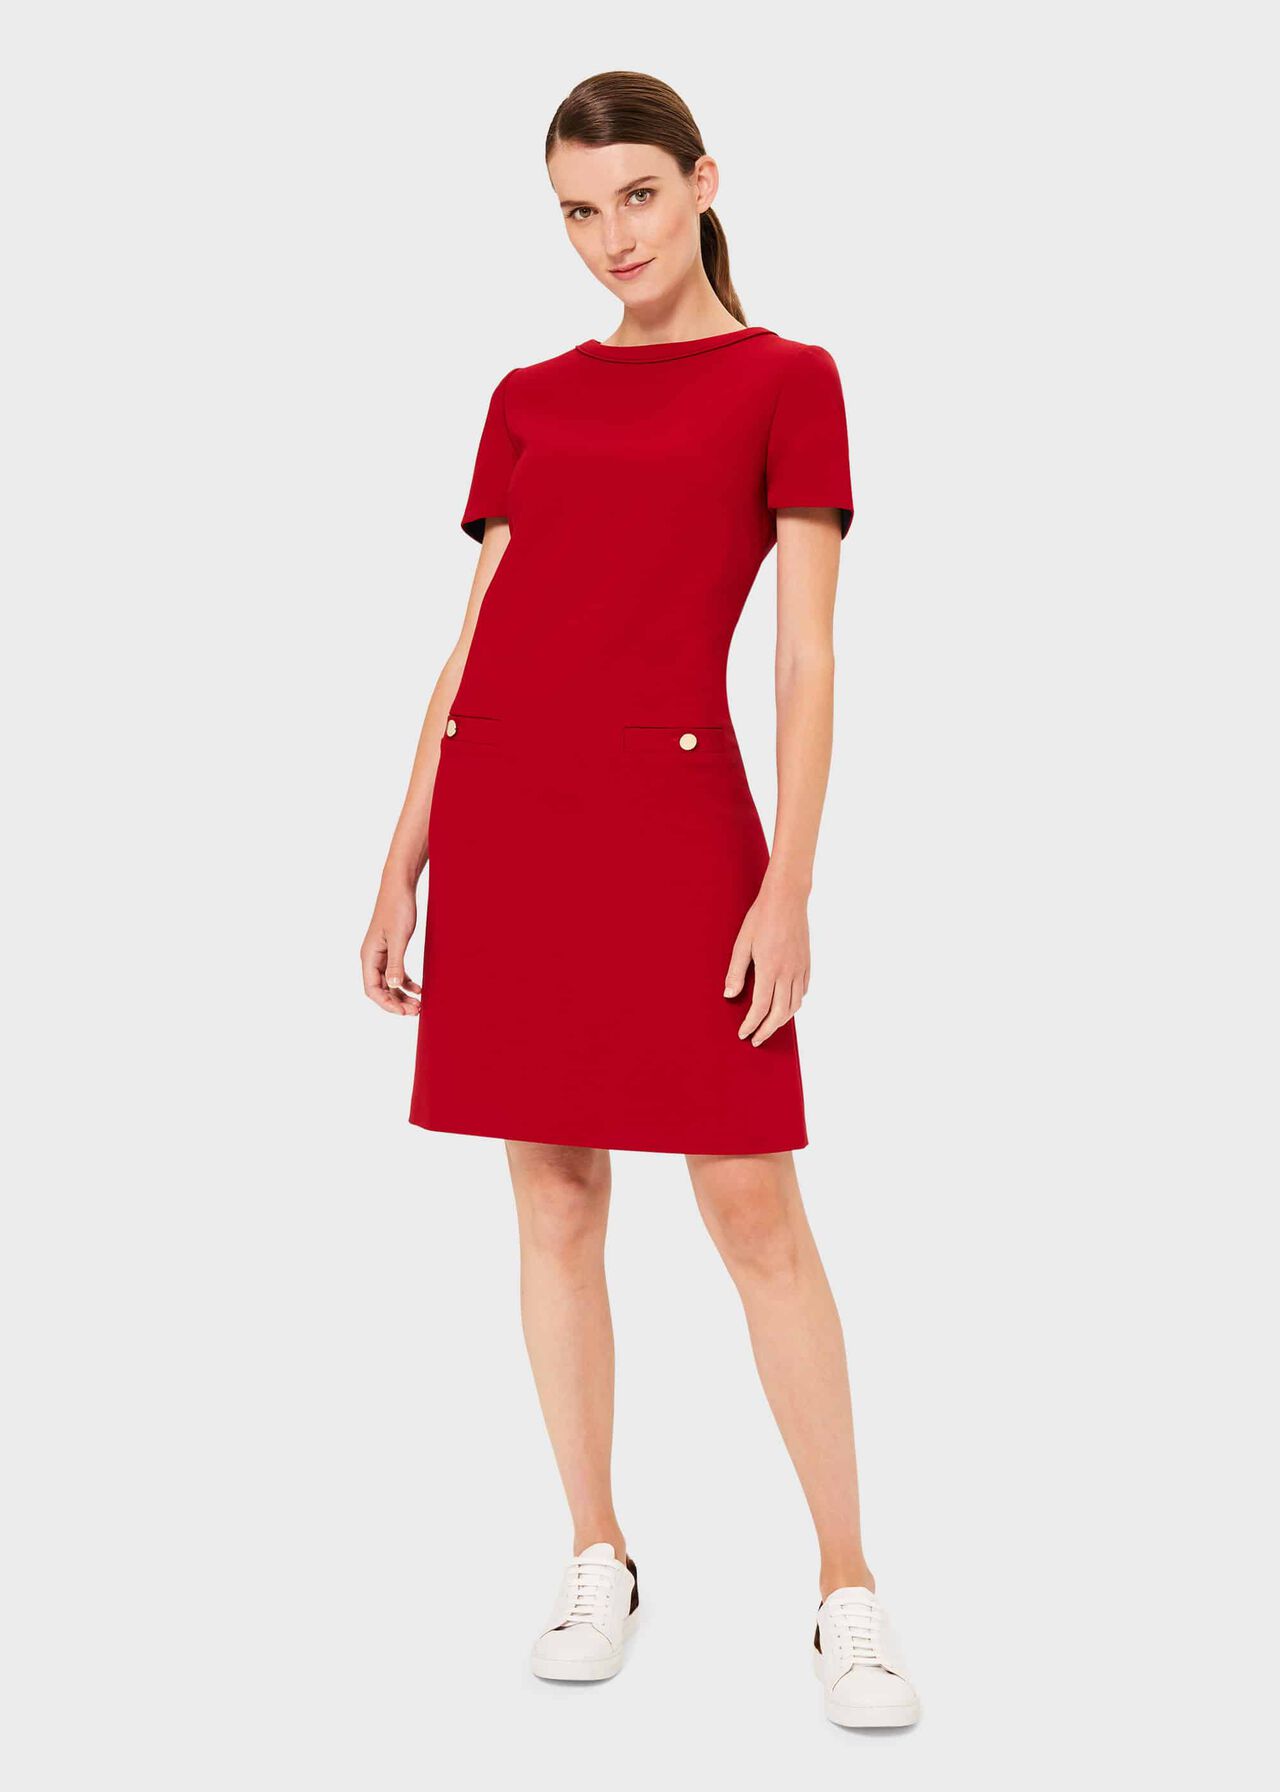 Petra Dress, Red, hi-res